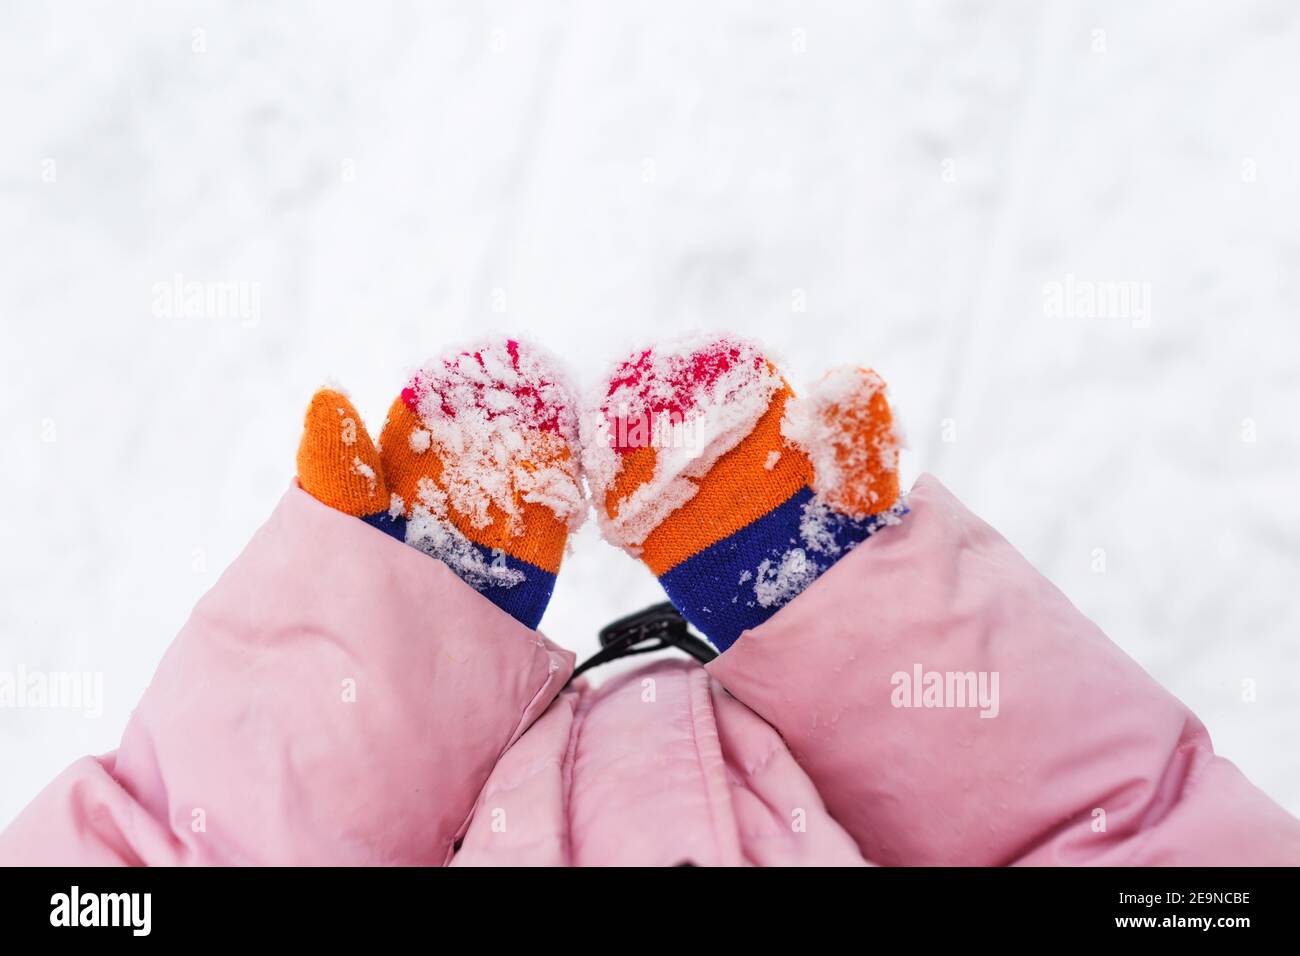 neige sur les moufles ou les gants. Les mains des enfants tiennent les  mains dans la neige. Moufles d'hiver tricotées colorées, tachées de neige.  Vacances d'hiver Photo Stock - Alamy